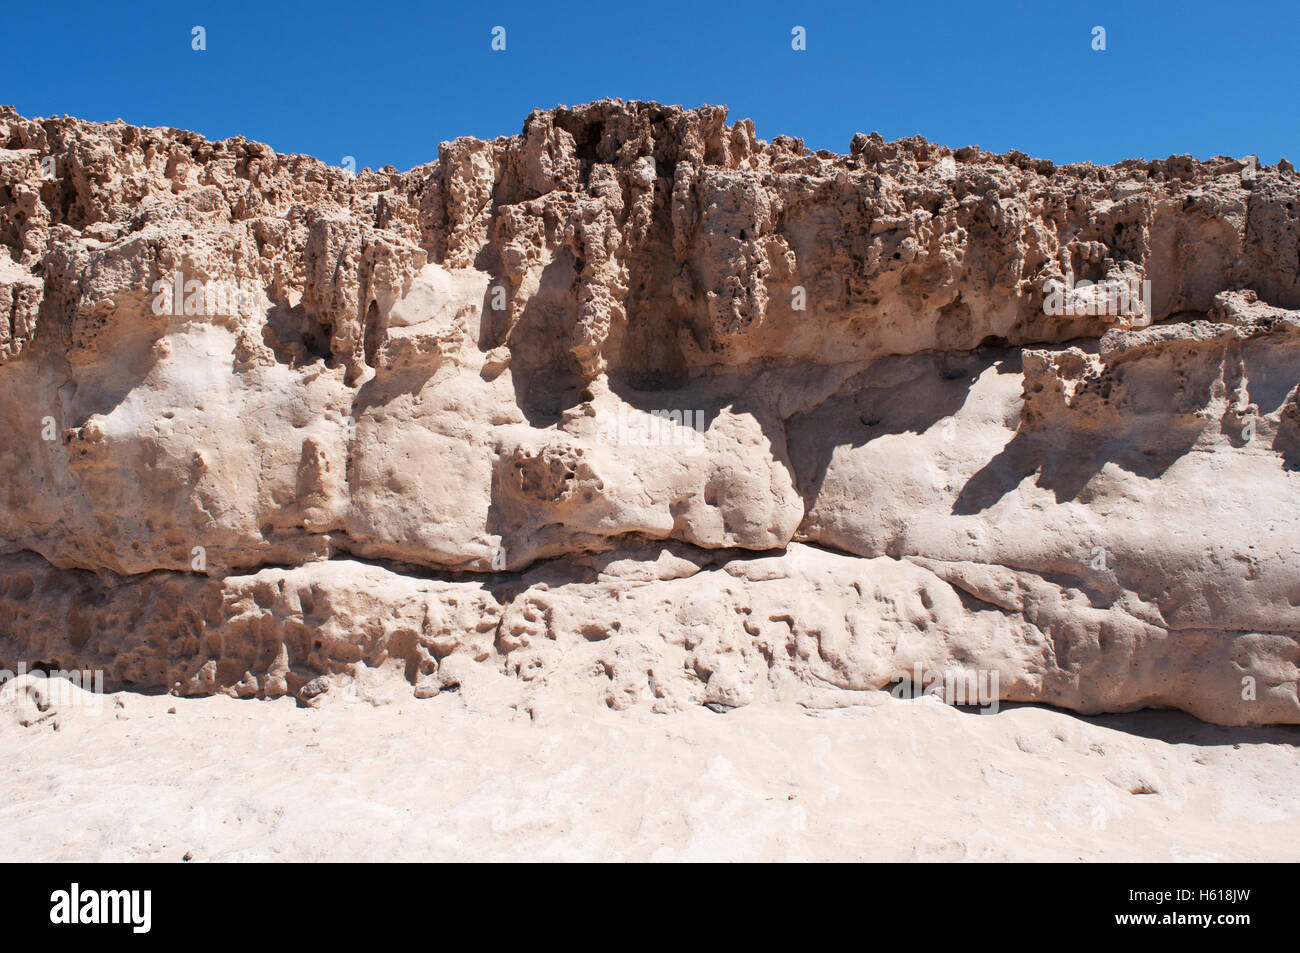 Fuerteventura, Îles Canaries, Afrique du Nord, Espagne : les formations rocheuses, le sable et les grottes d'Ajuy vu depuis le sentier le long de la falaise Banque D'Images